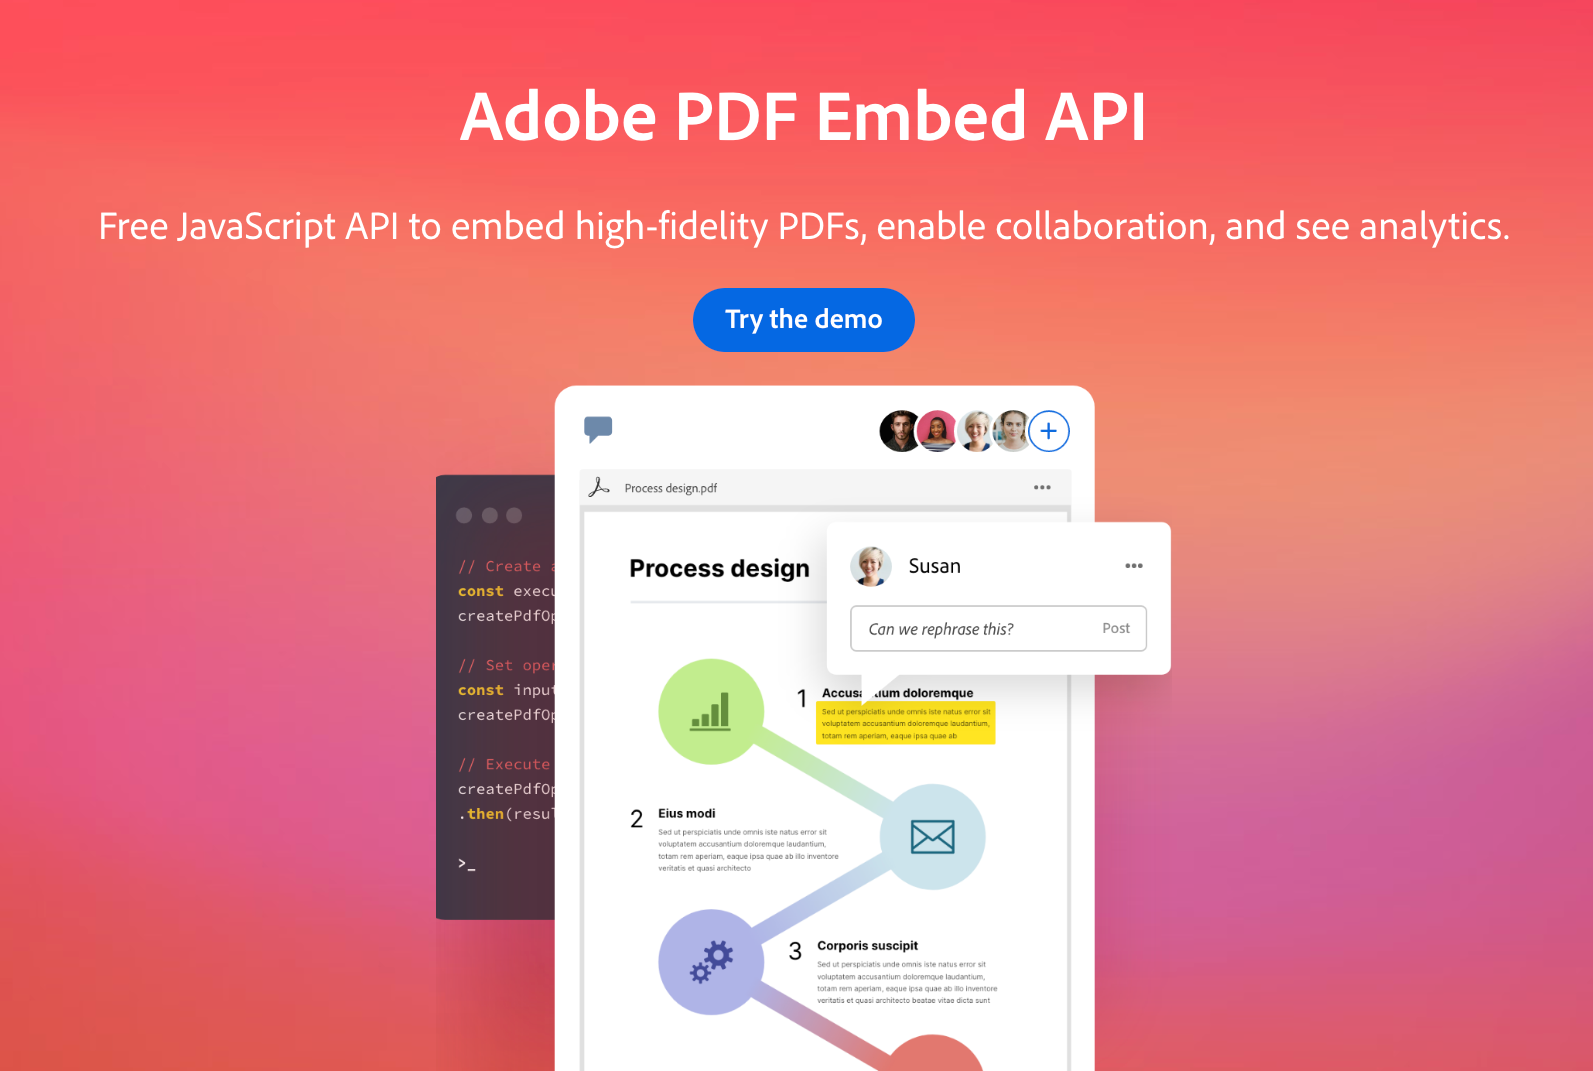 ฝัง PDF ในเว็บไซต์สวยๆ ด้วย Adobe PDF Embed API